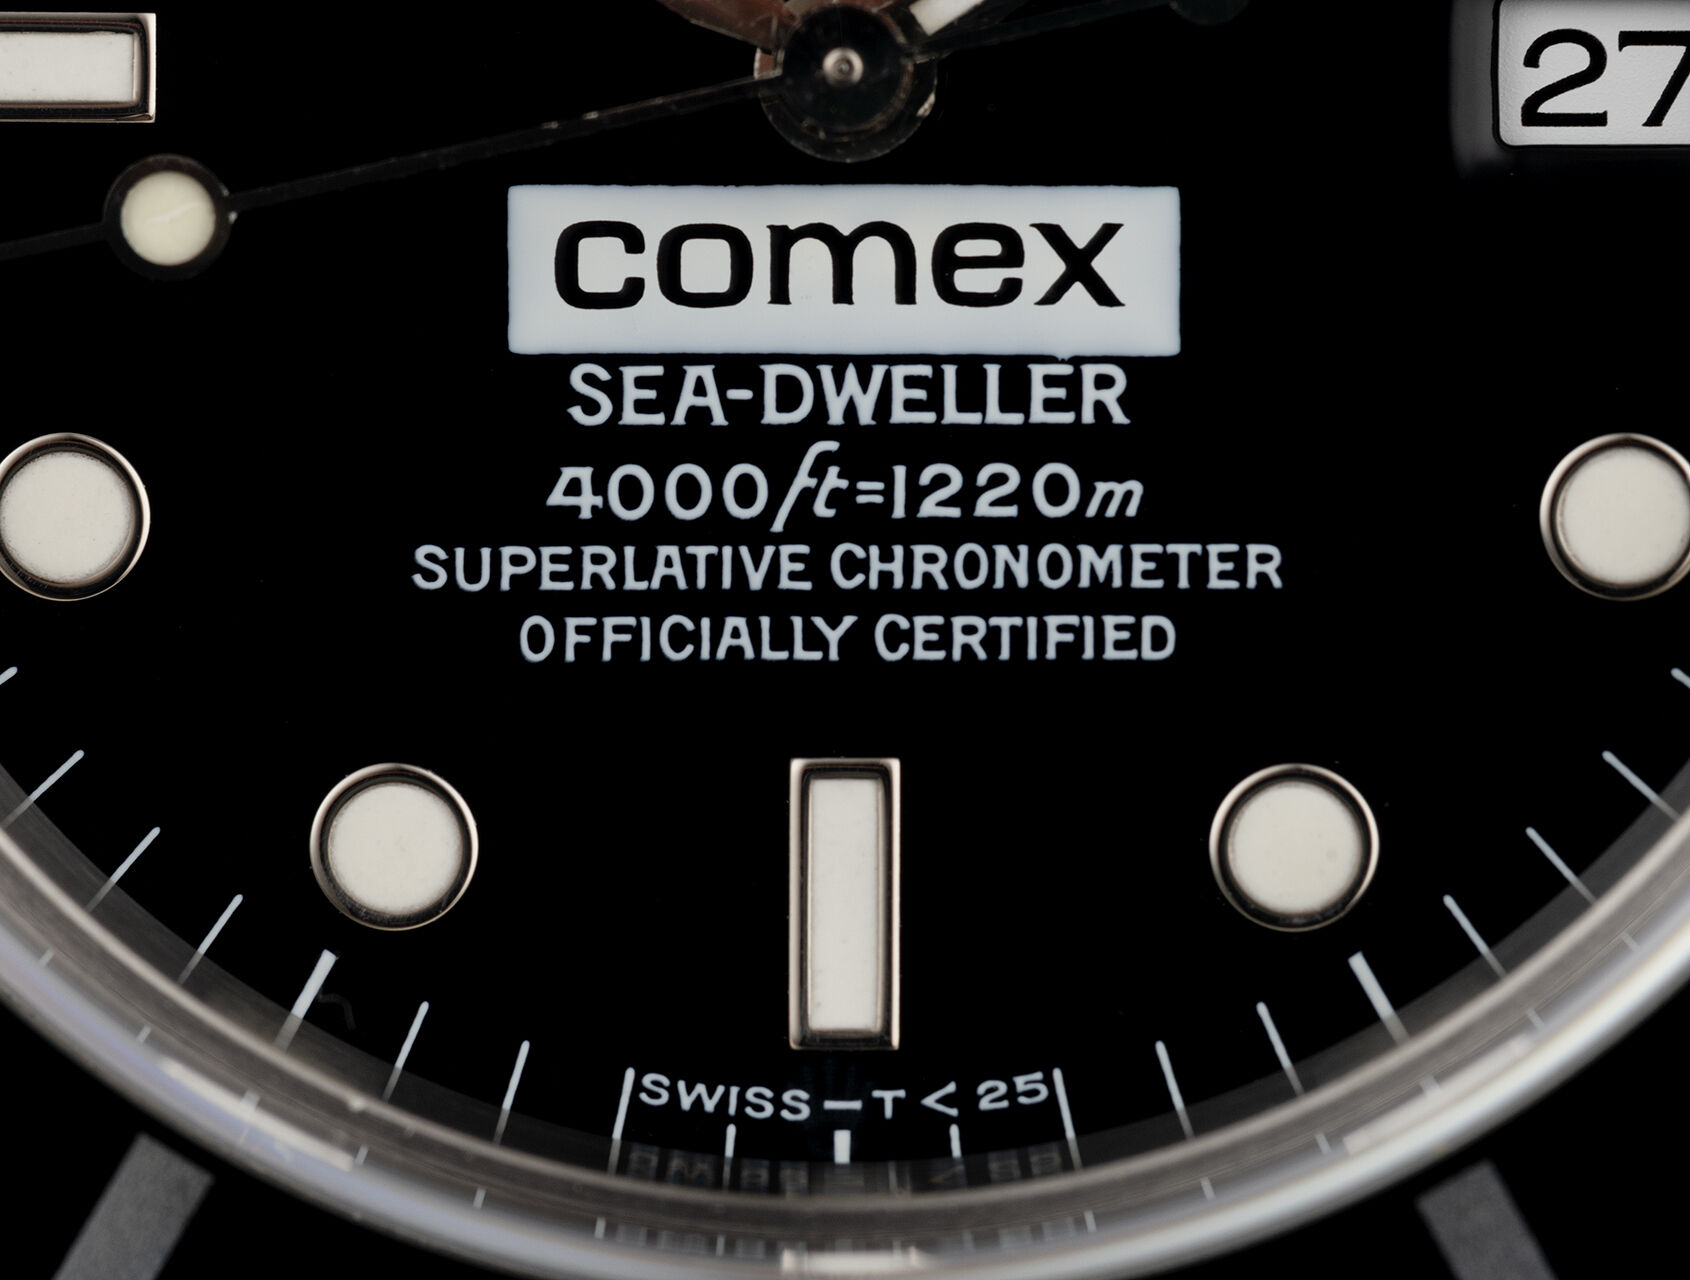 ref 16600 | 16600 - Box & Certificate | Rolex Sea-Dweller